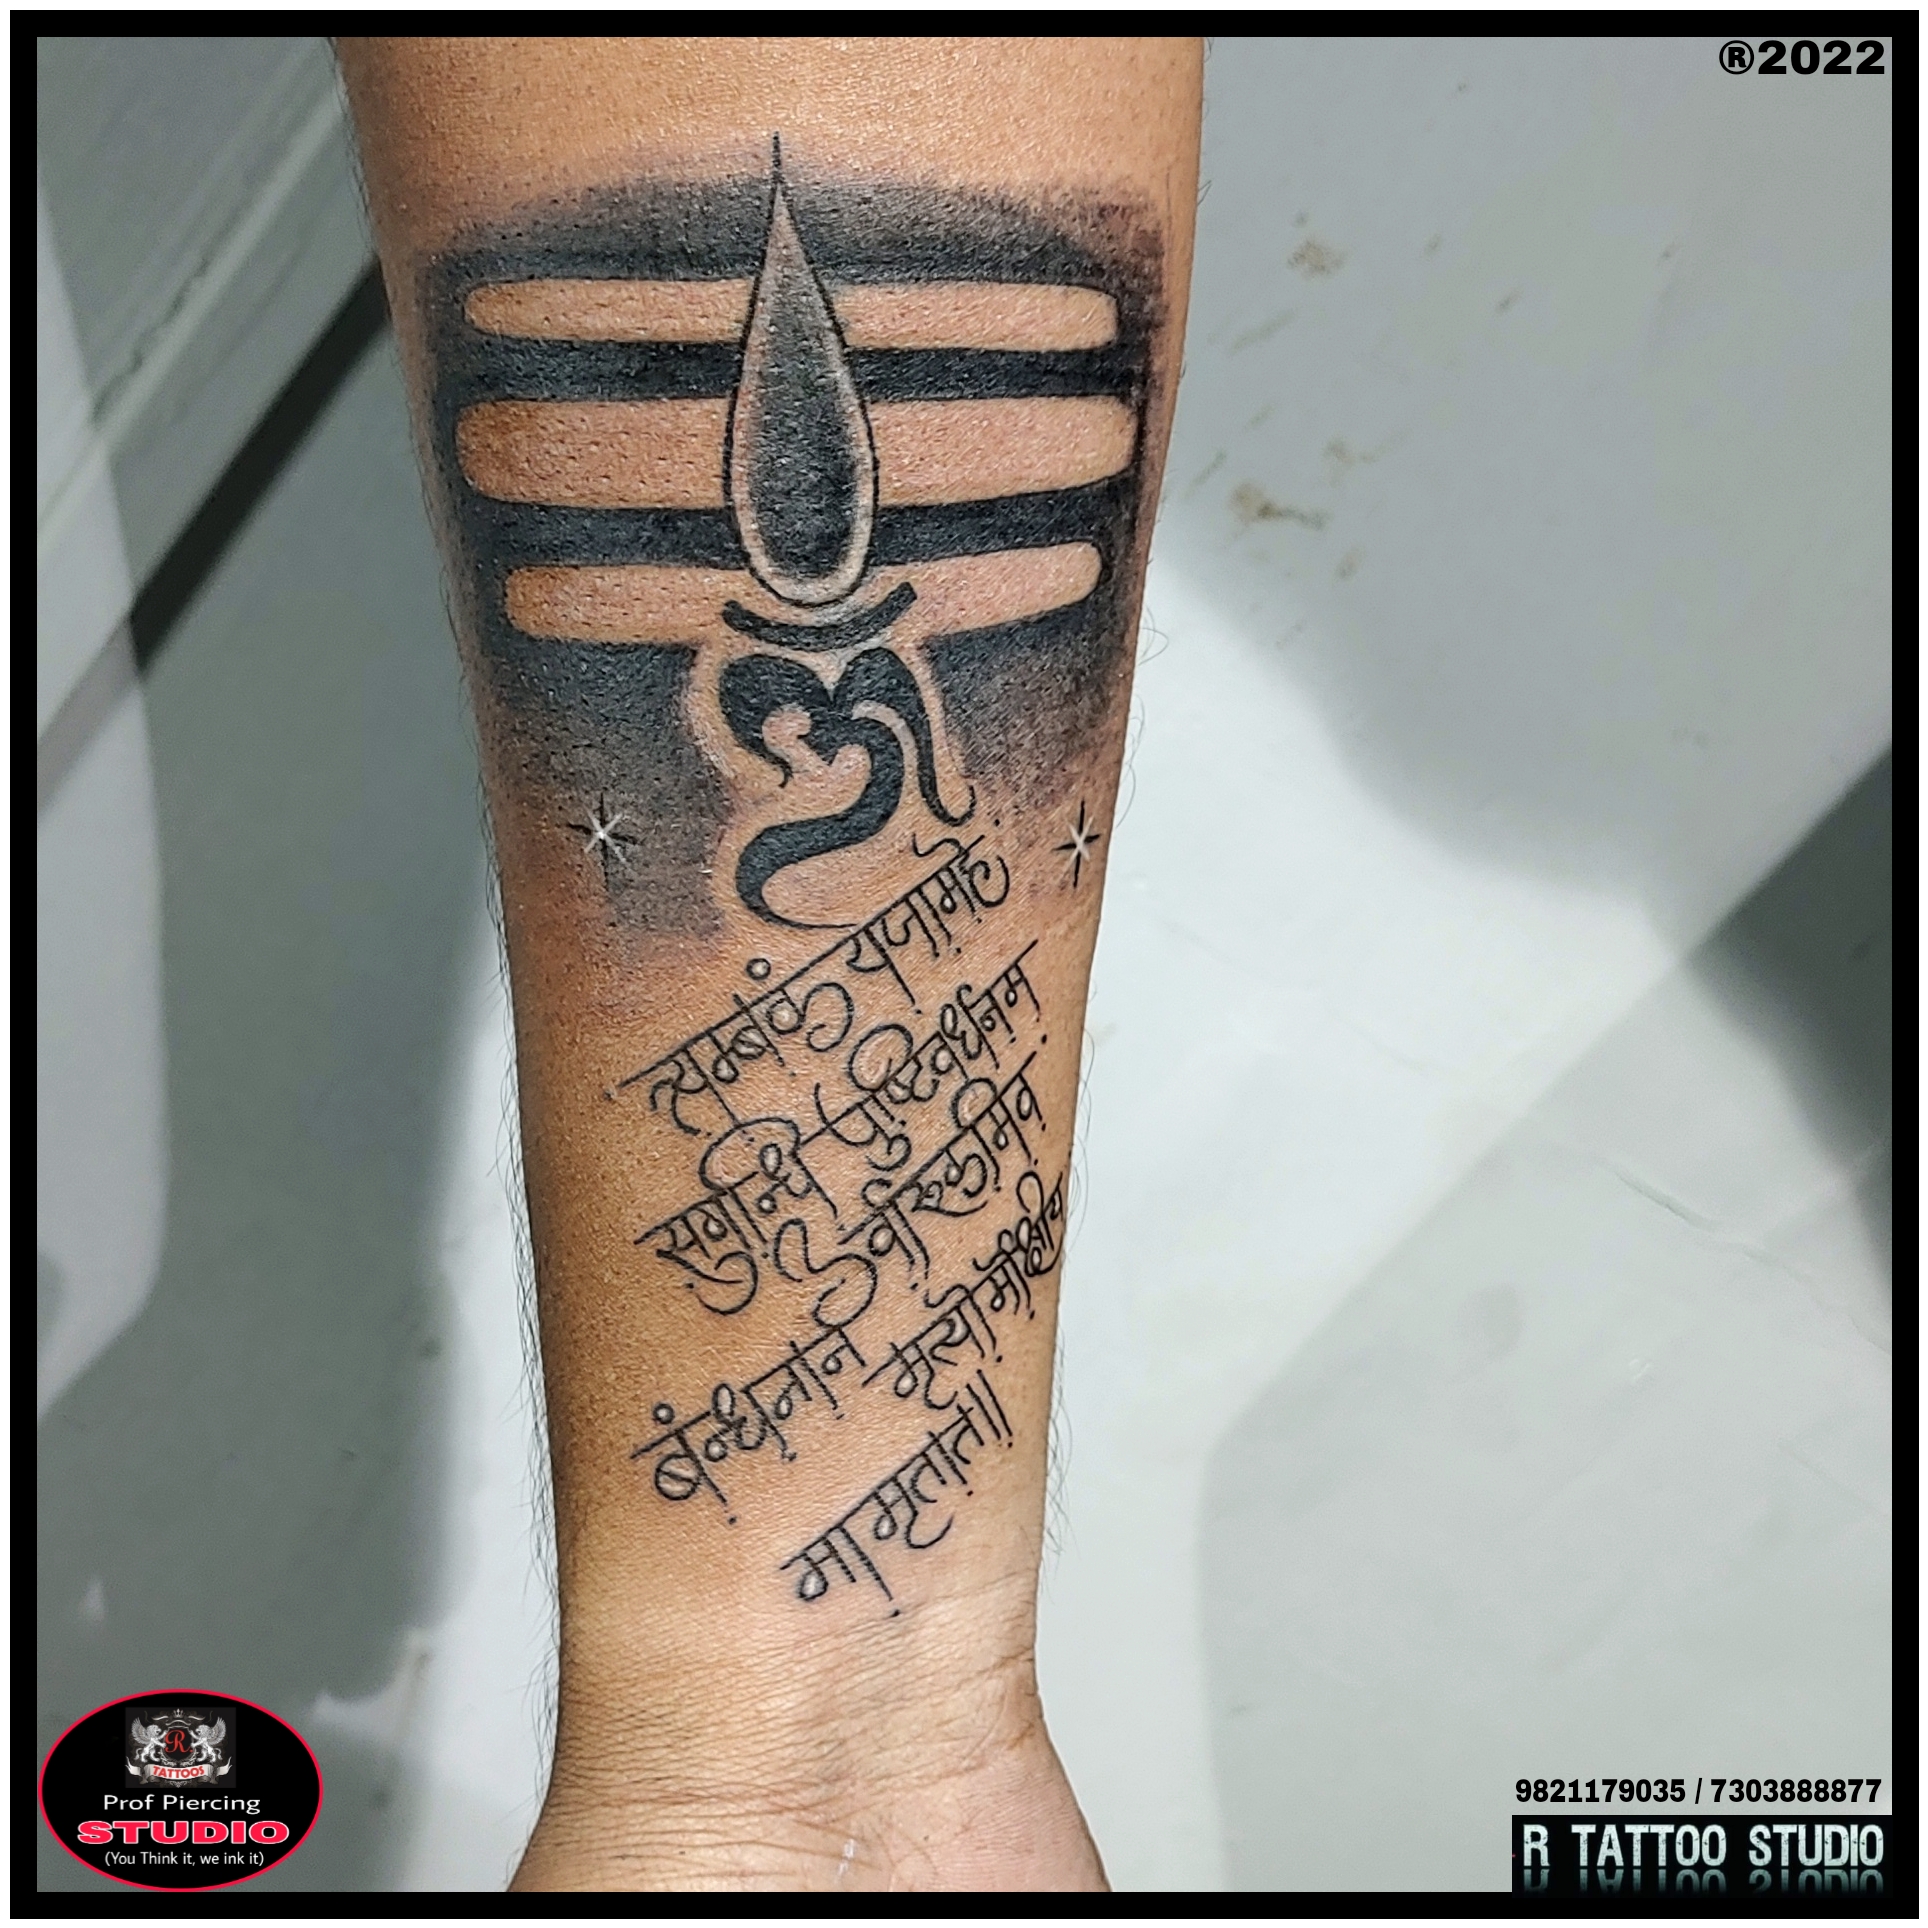 Shivatattoo #shiva #tattoo #mantra #tattoo #lordsh by Rtattoostudio on  DeviantArt